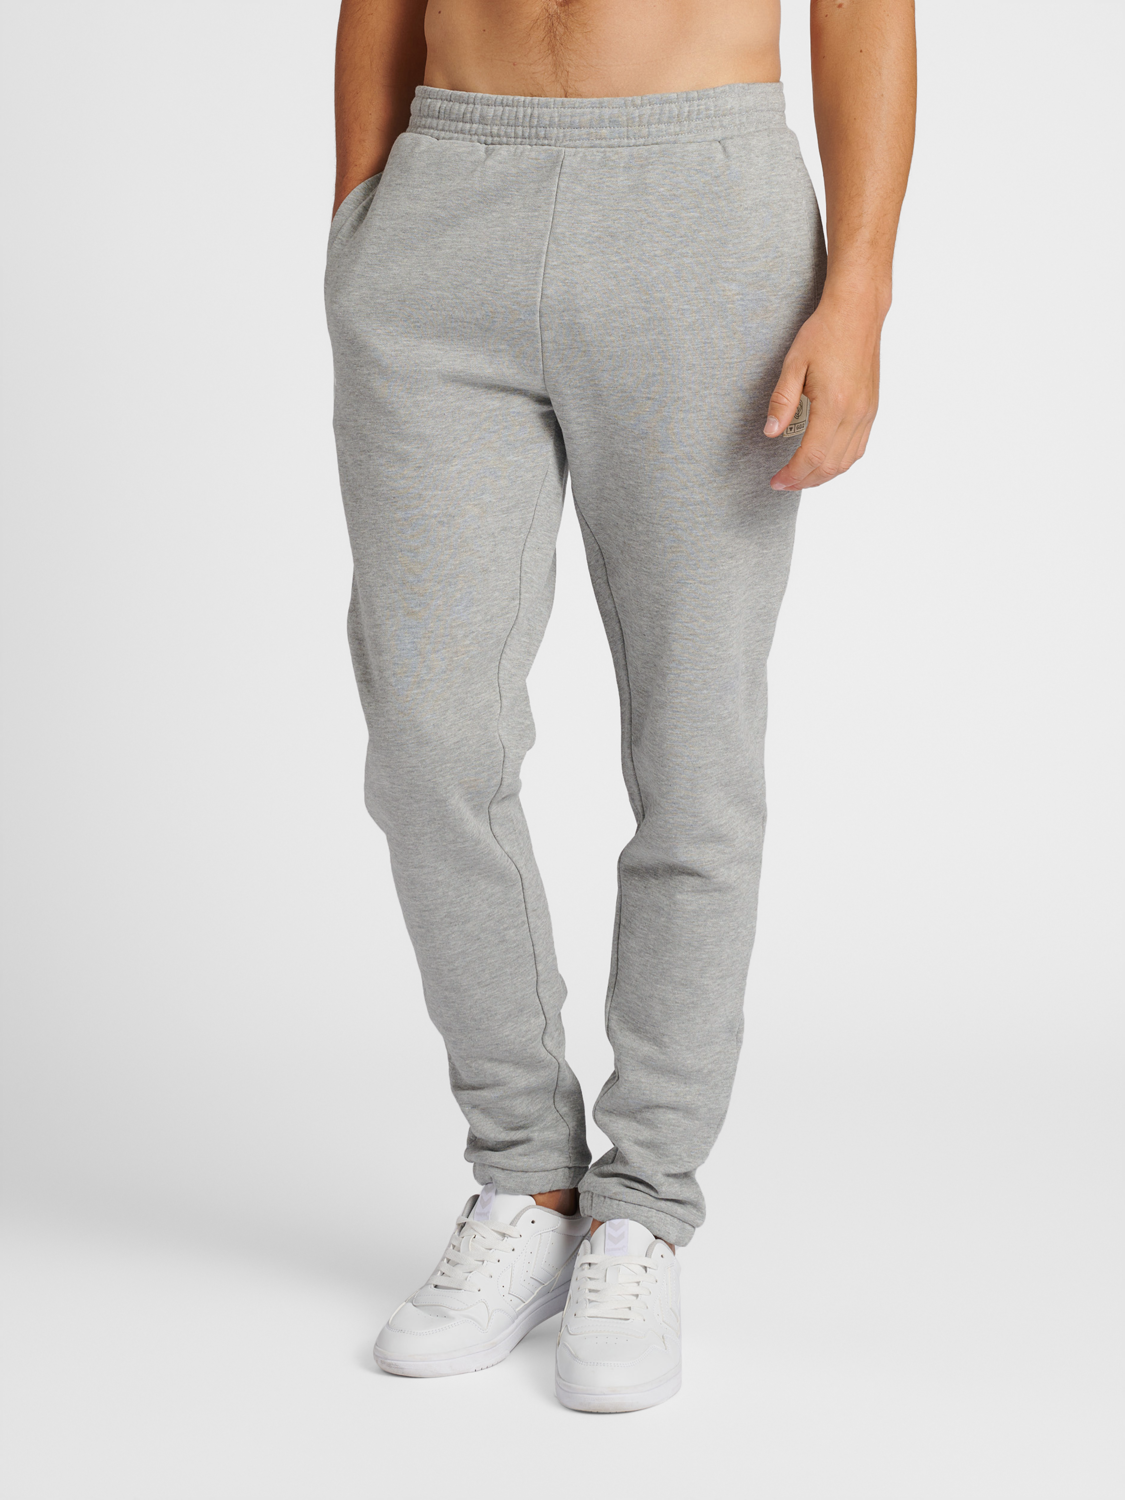 Buy Now,TeenTrums Girls Track pants loose fit-Grey Melange